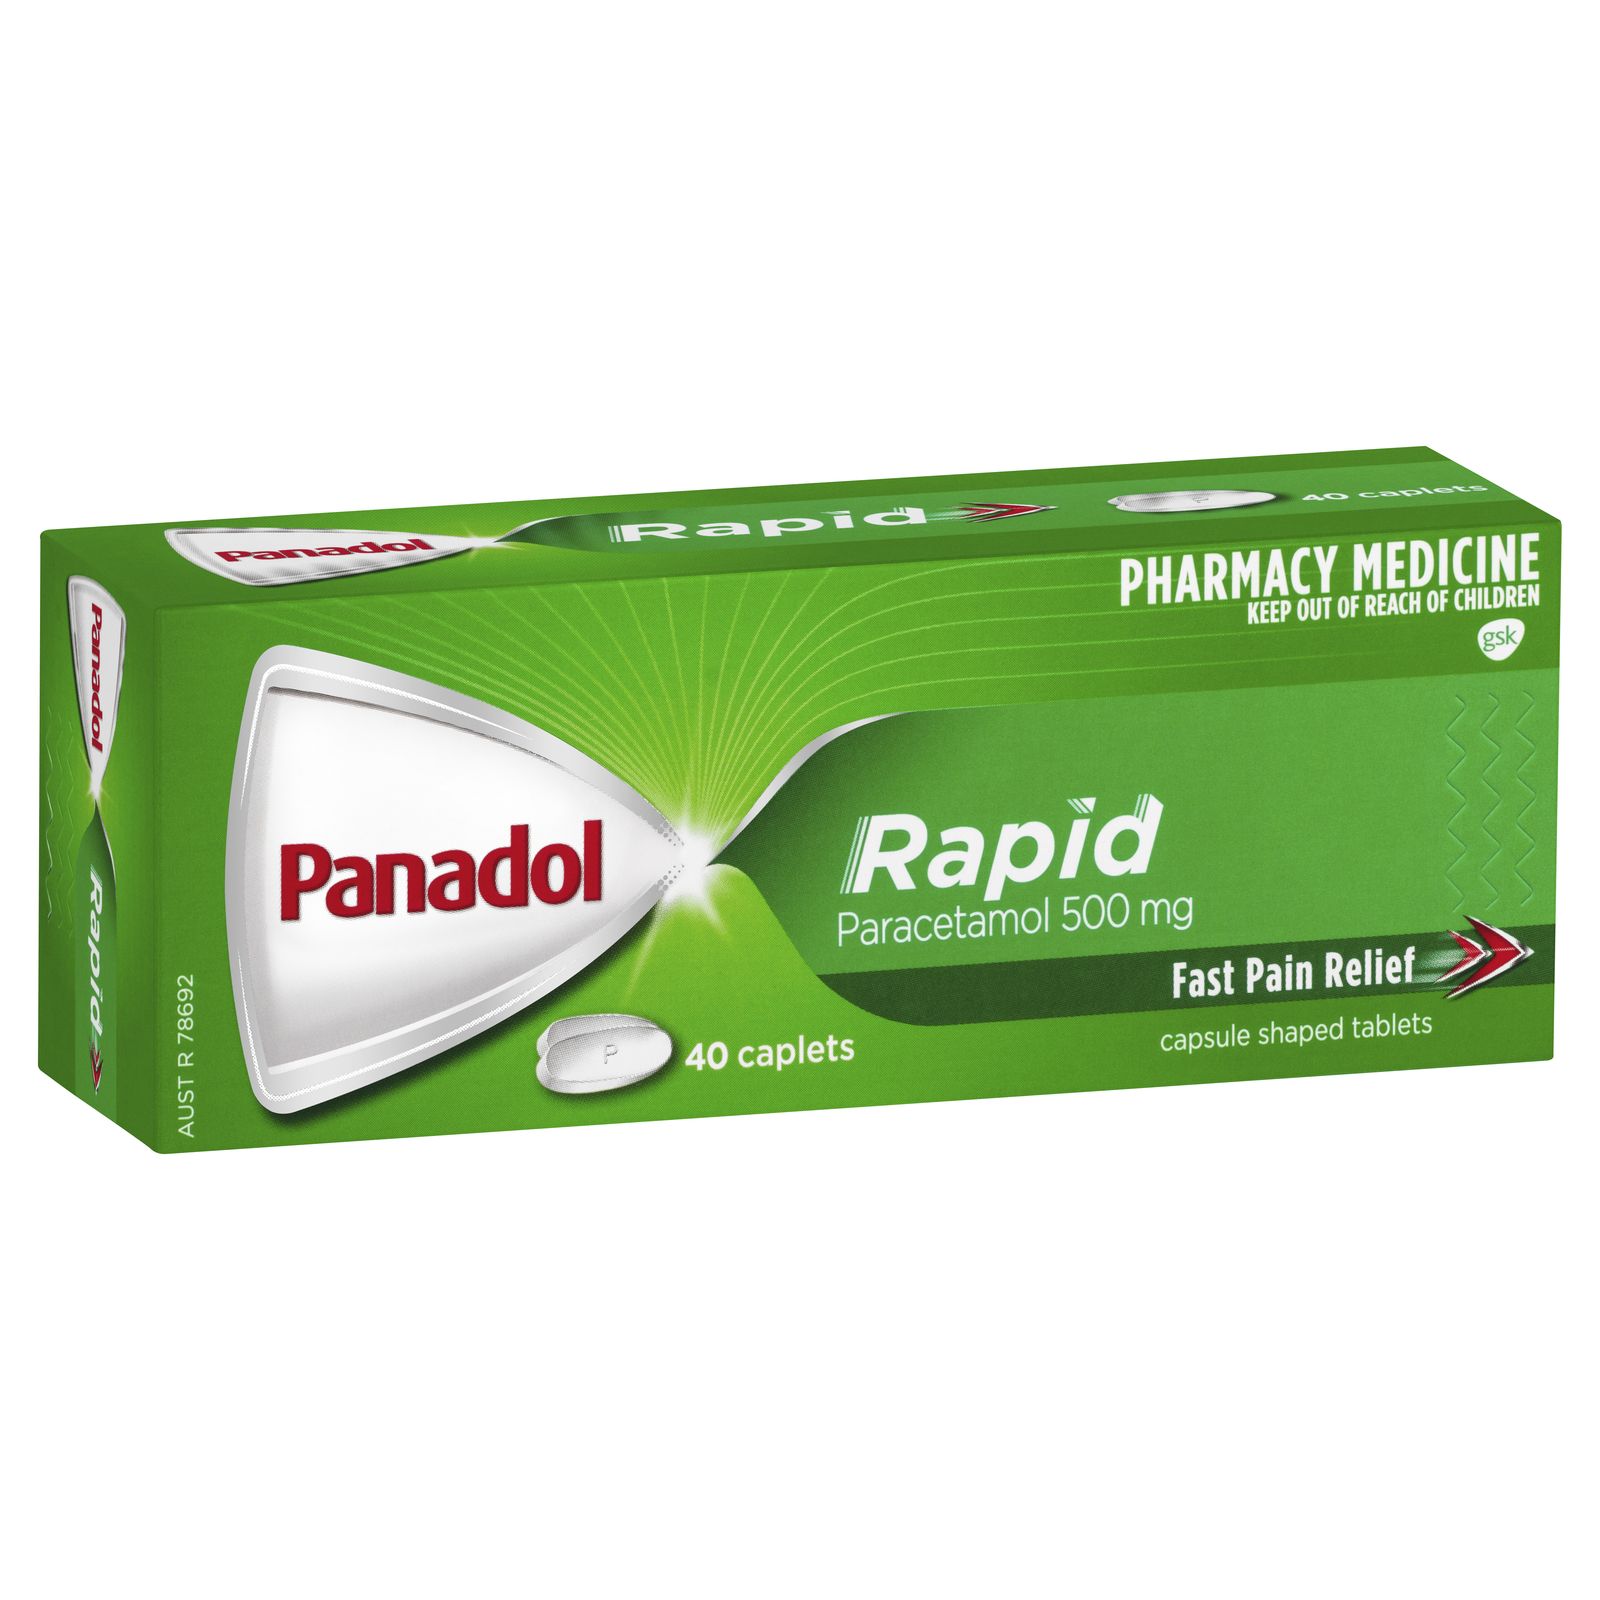 PANADOL Rapid 40caps